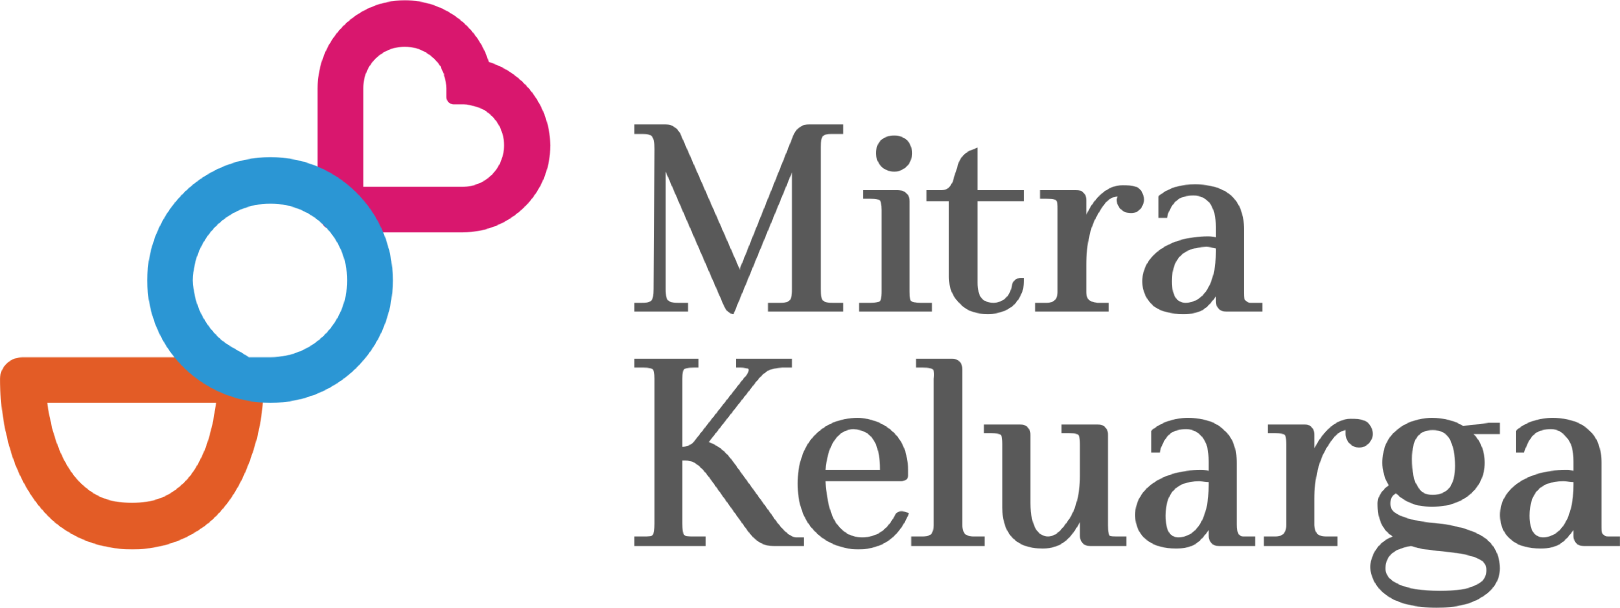 Mitra Keluarga logo large (transparent PNG)